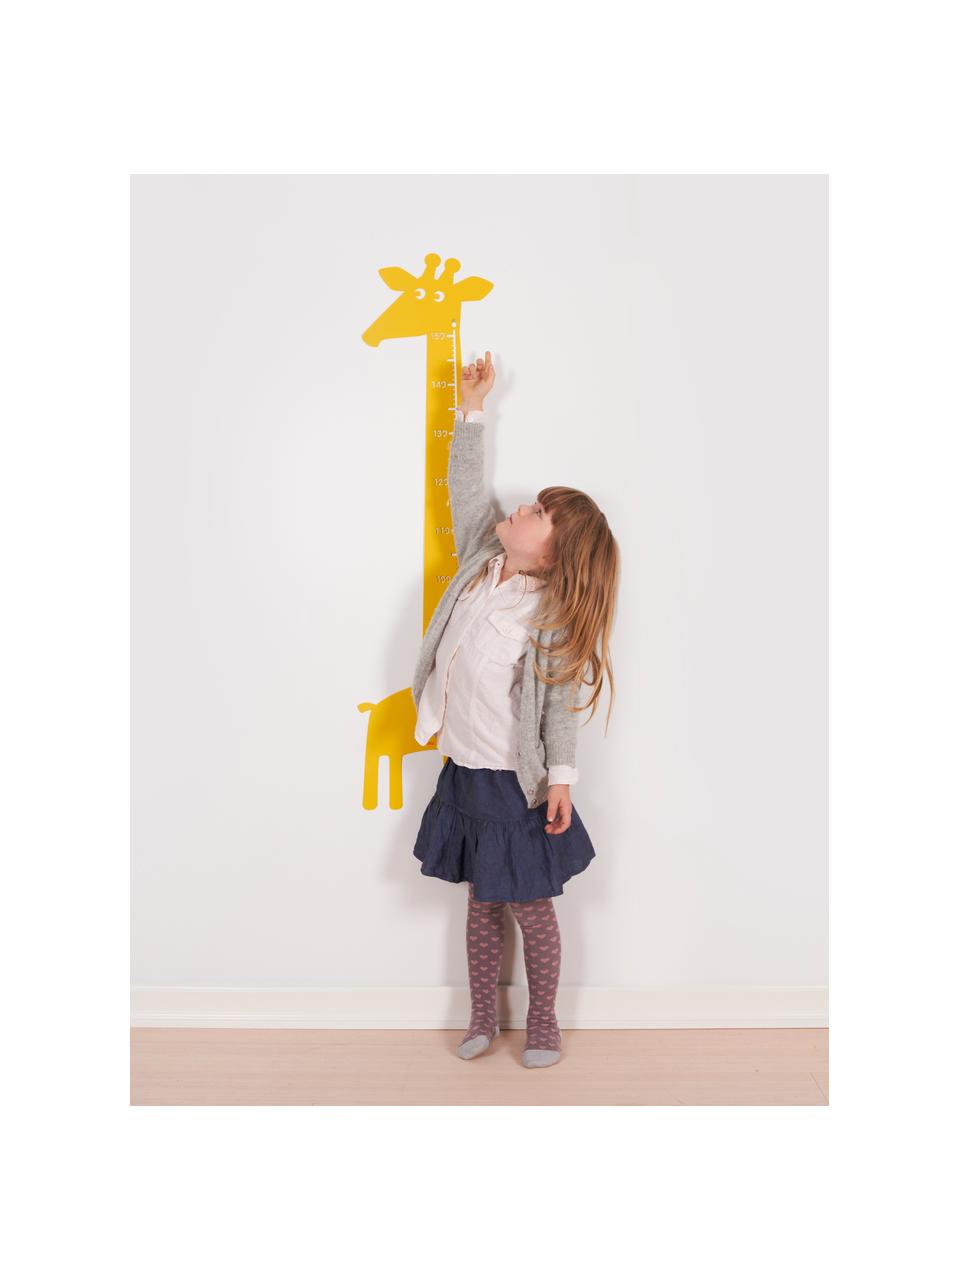 Miarka Giraffe, Metal malowany proszkowo, Żółty, S 28 x W 115 cm